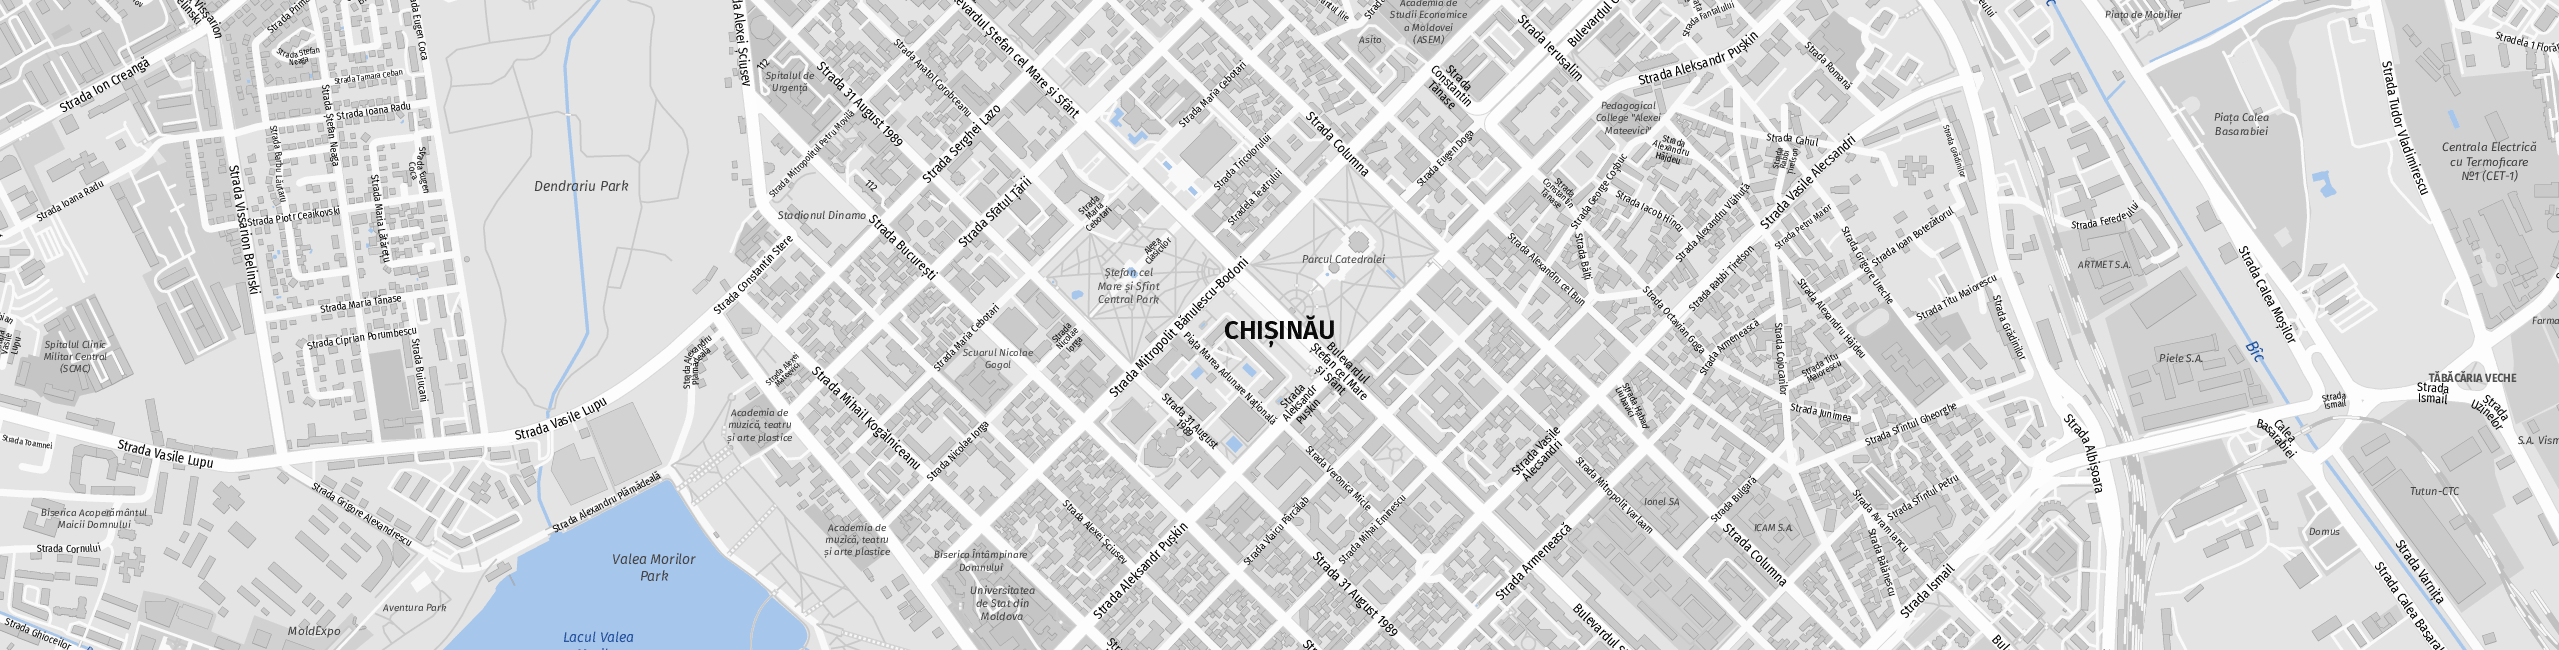 Stadtplan Kischinau zum Downloaden.